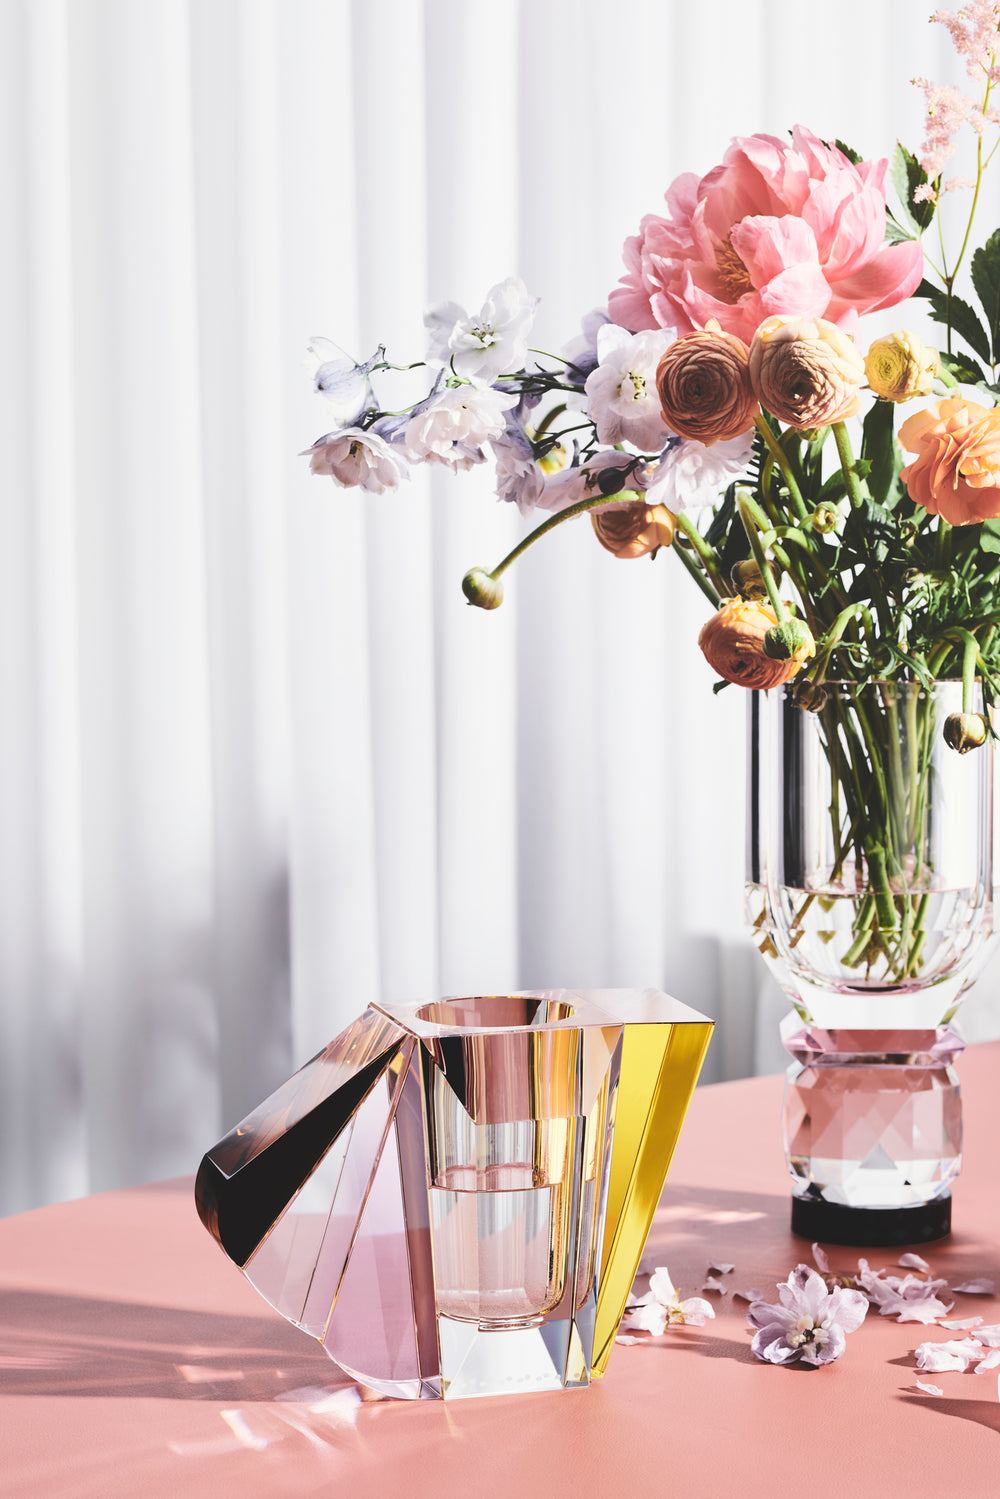 Opsætning af vaser i klar, brun, gul og lyserød krystal med blomster i, på bord med koralfarvet dug.